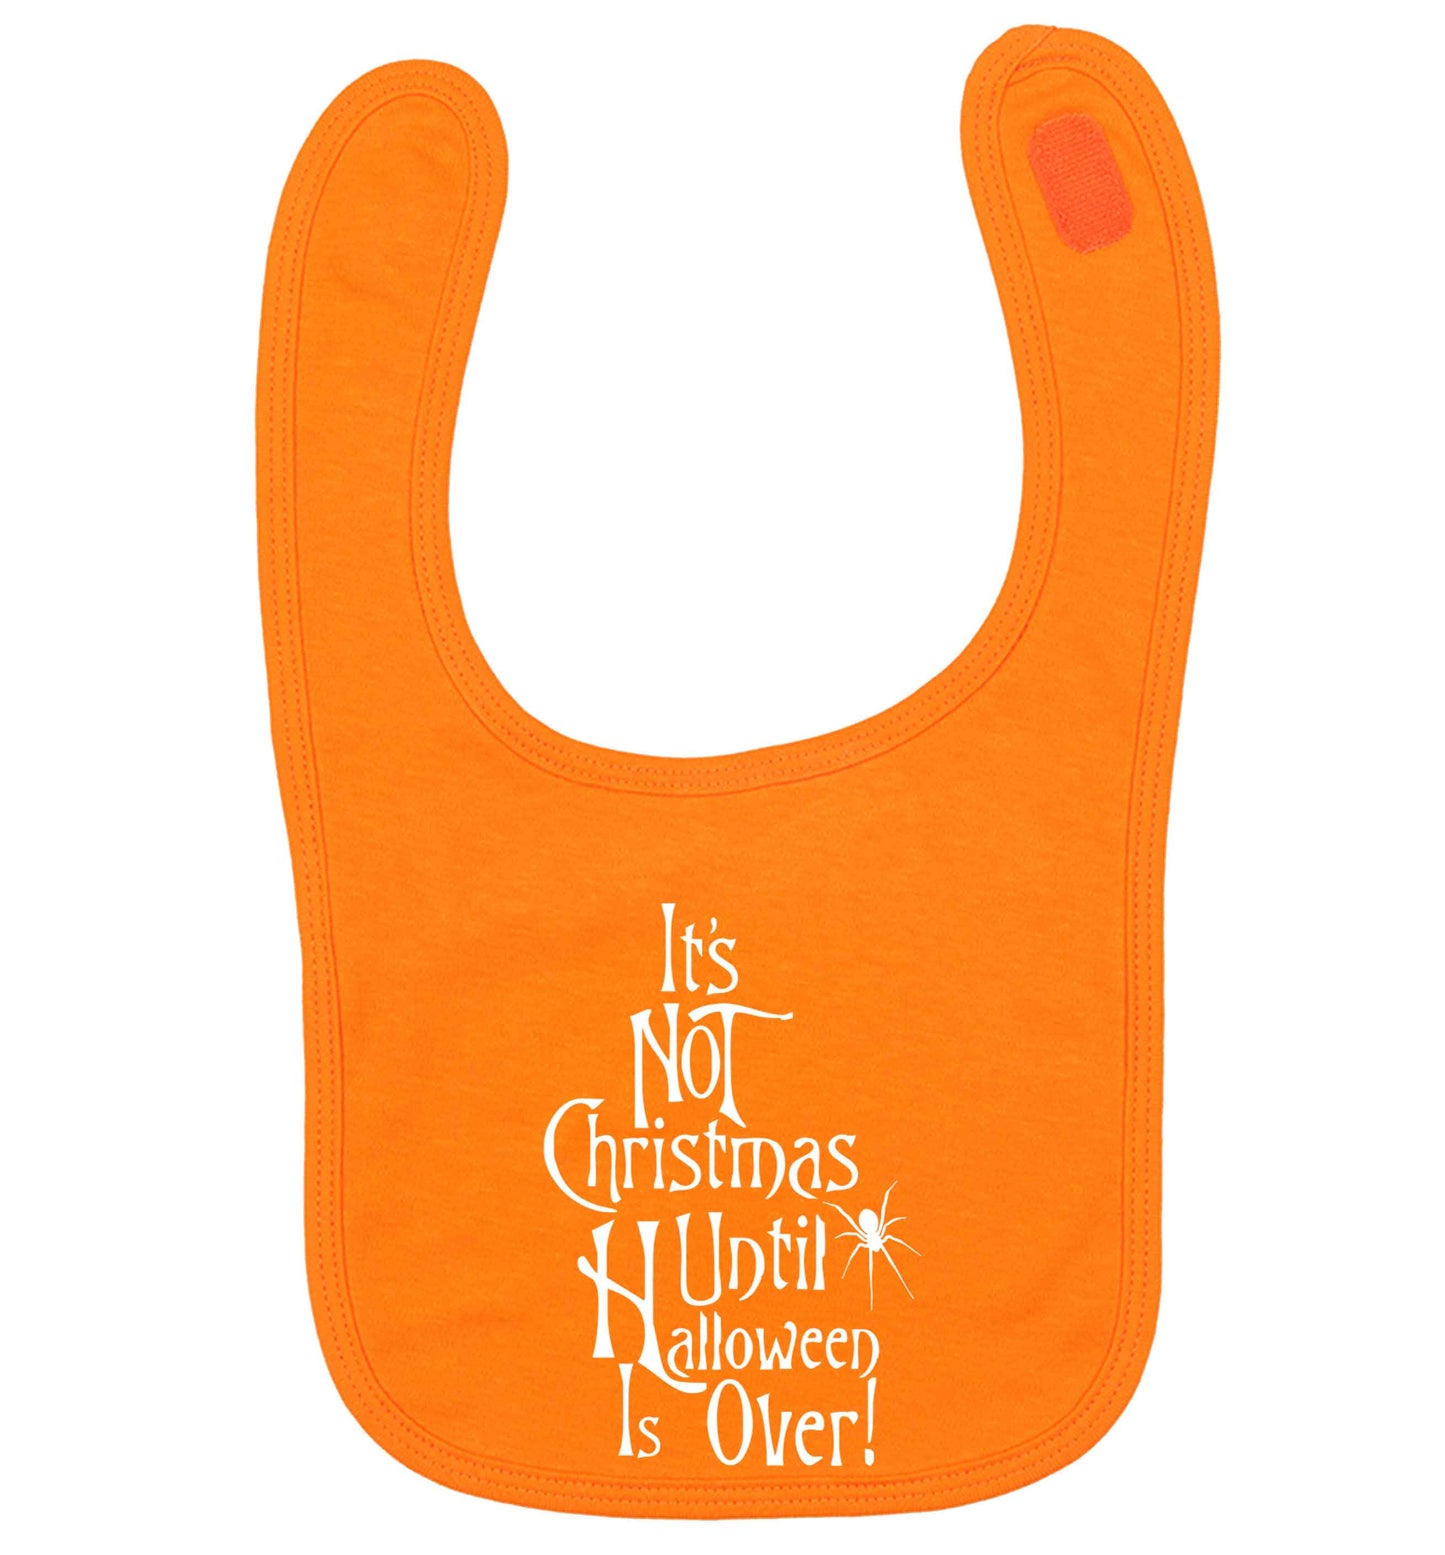 It's not Christmas until Halloween is over orange baby bib